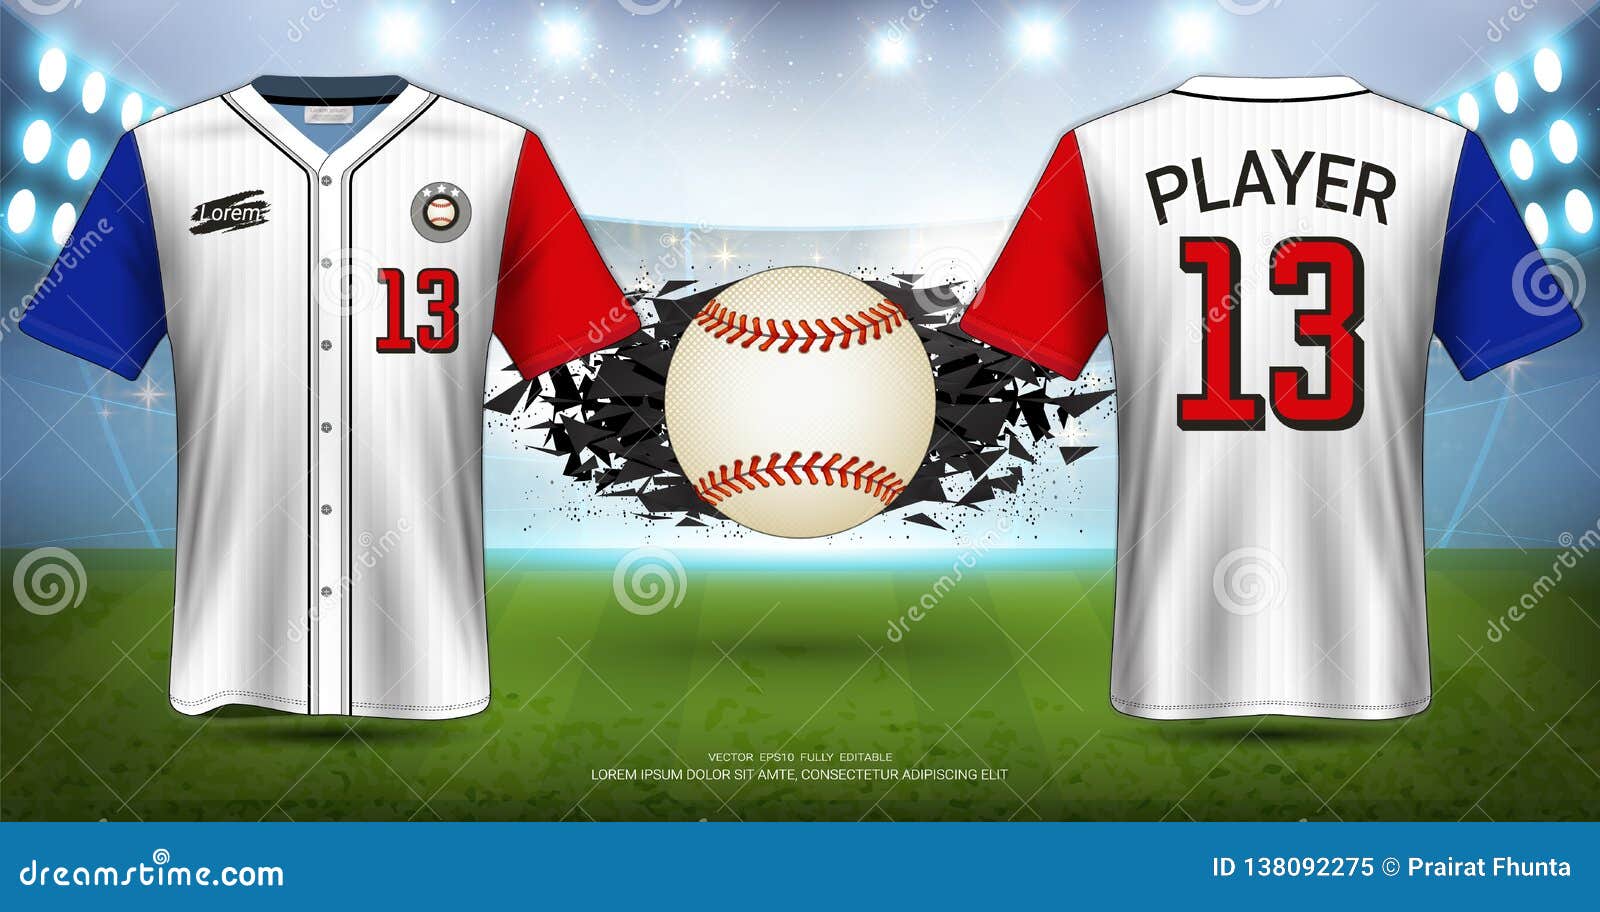 Custom Design Baseball Jerseys Mockups Templates Illustrations Stock Vector  - Illustration of design, fashion: 184750337